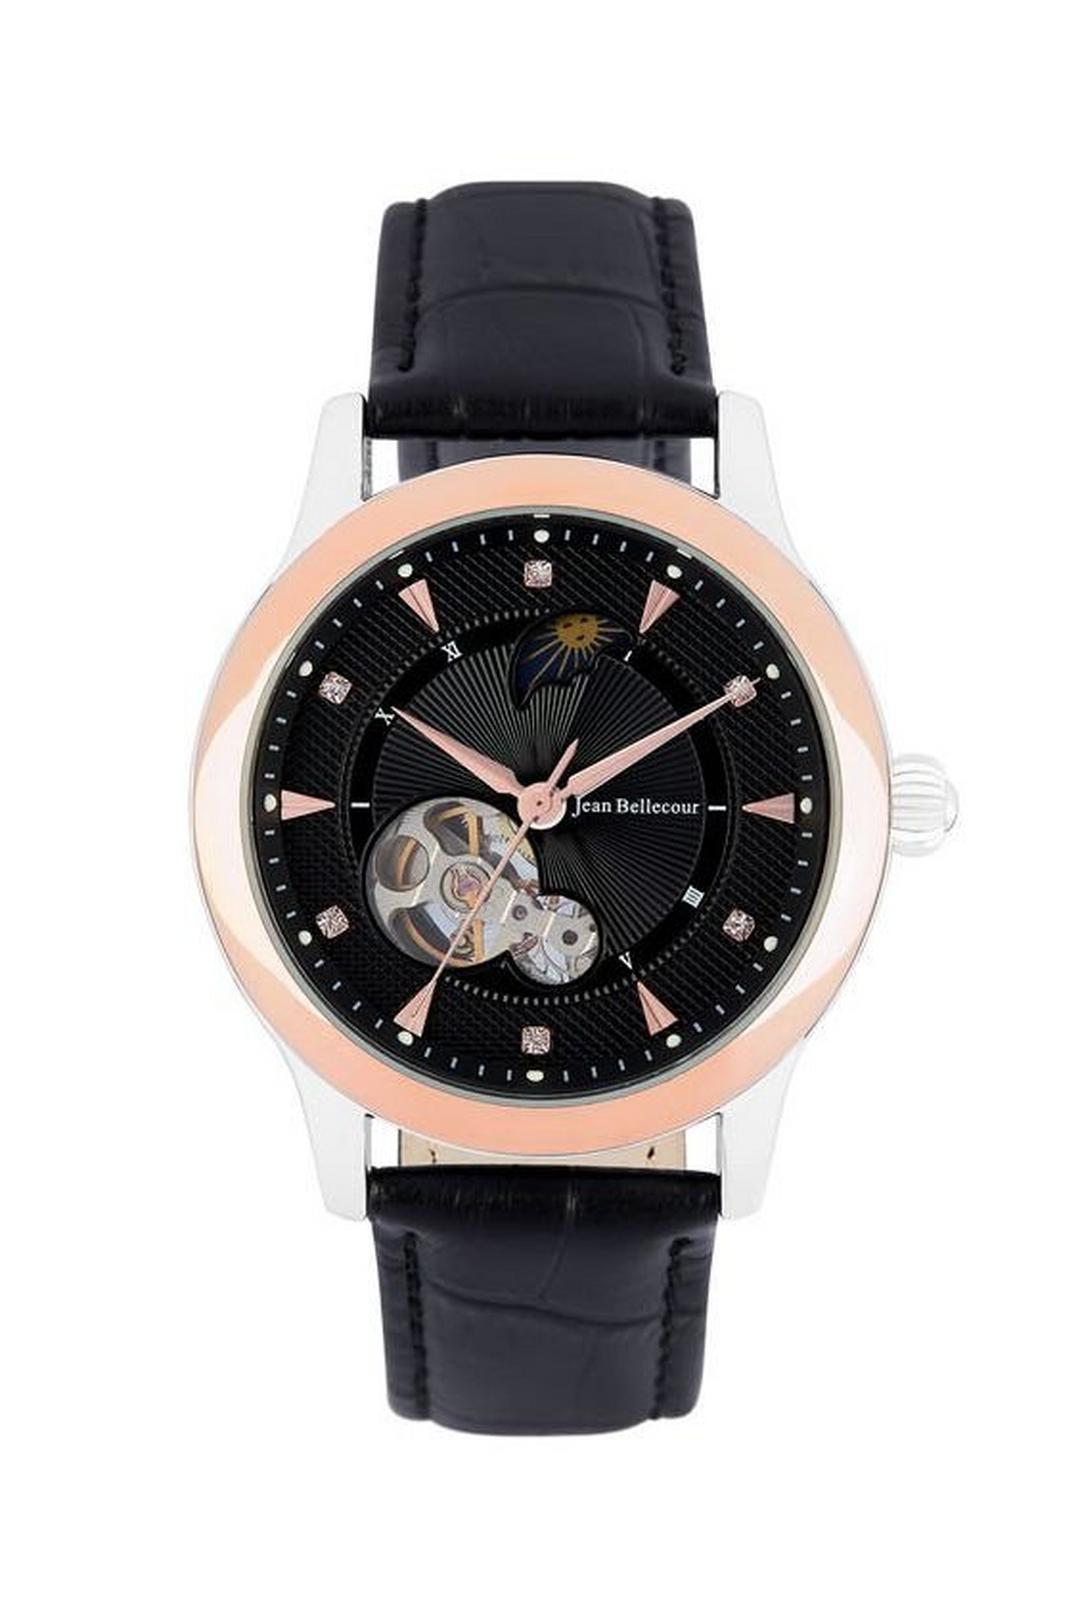 ساعة جين بليكور رجالية أوتوماتيكية بعرض تناظري وحزام جلد (JBP1902)